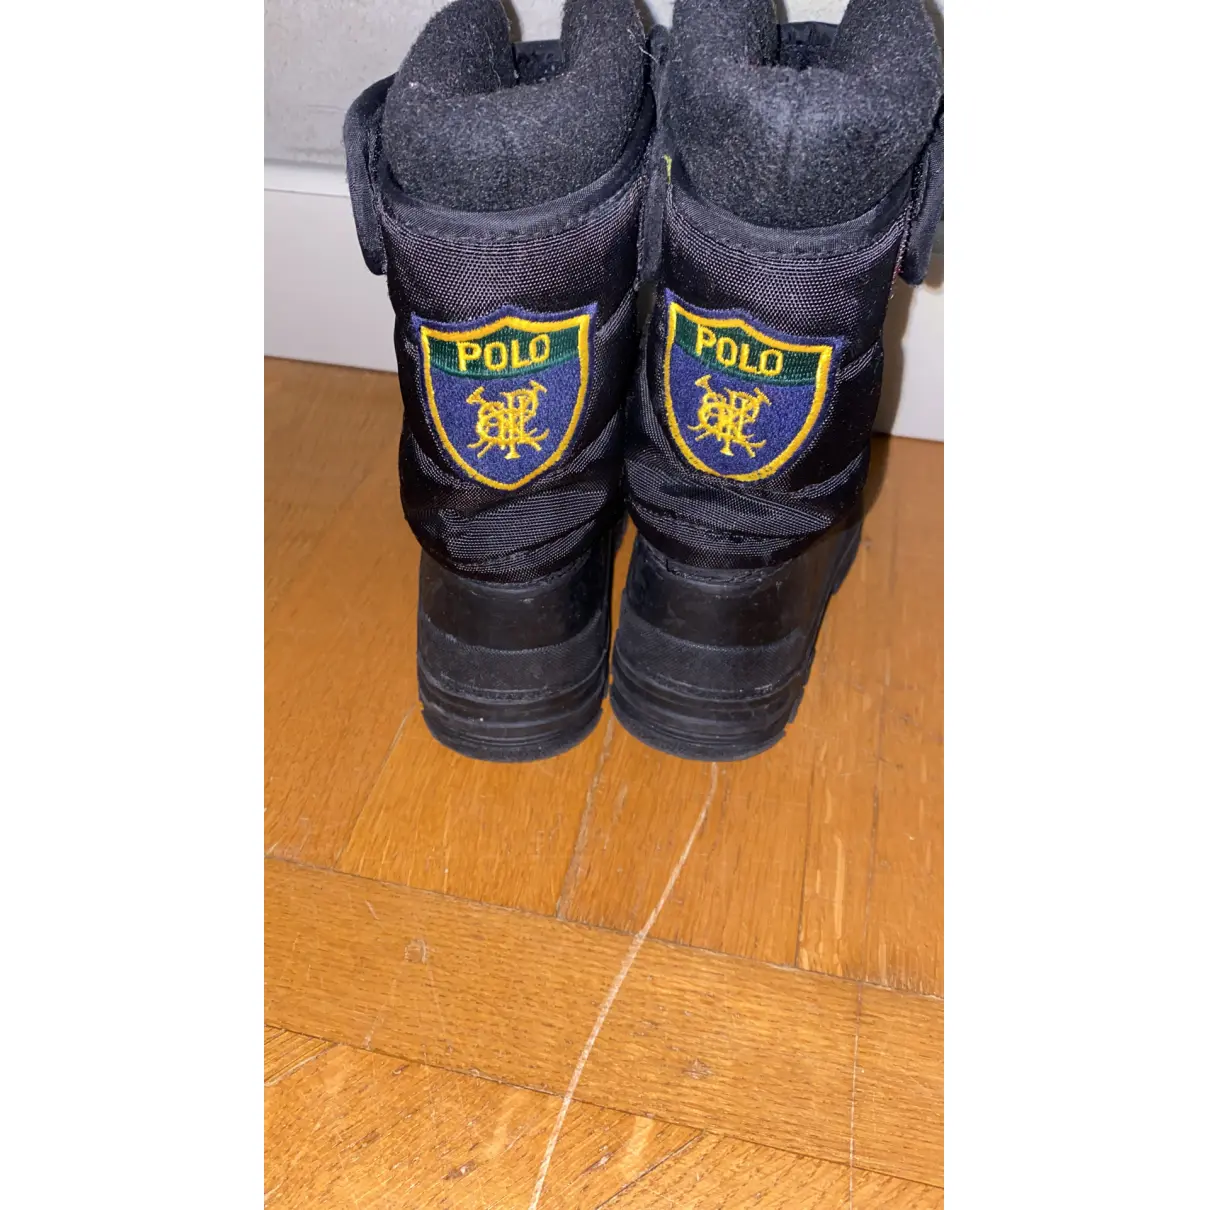 Buy Polo Ralph Lauren Boots online